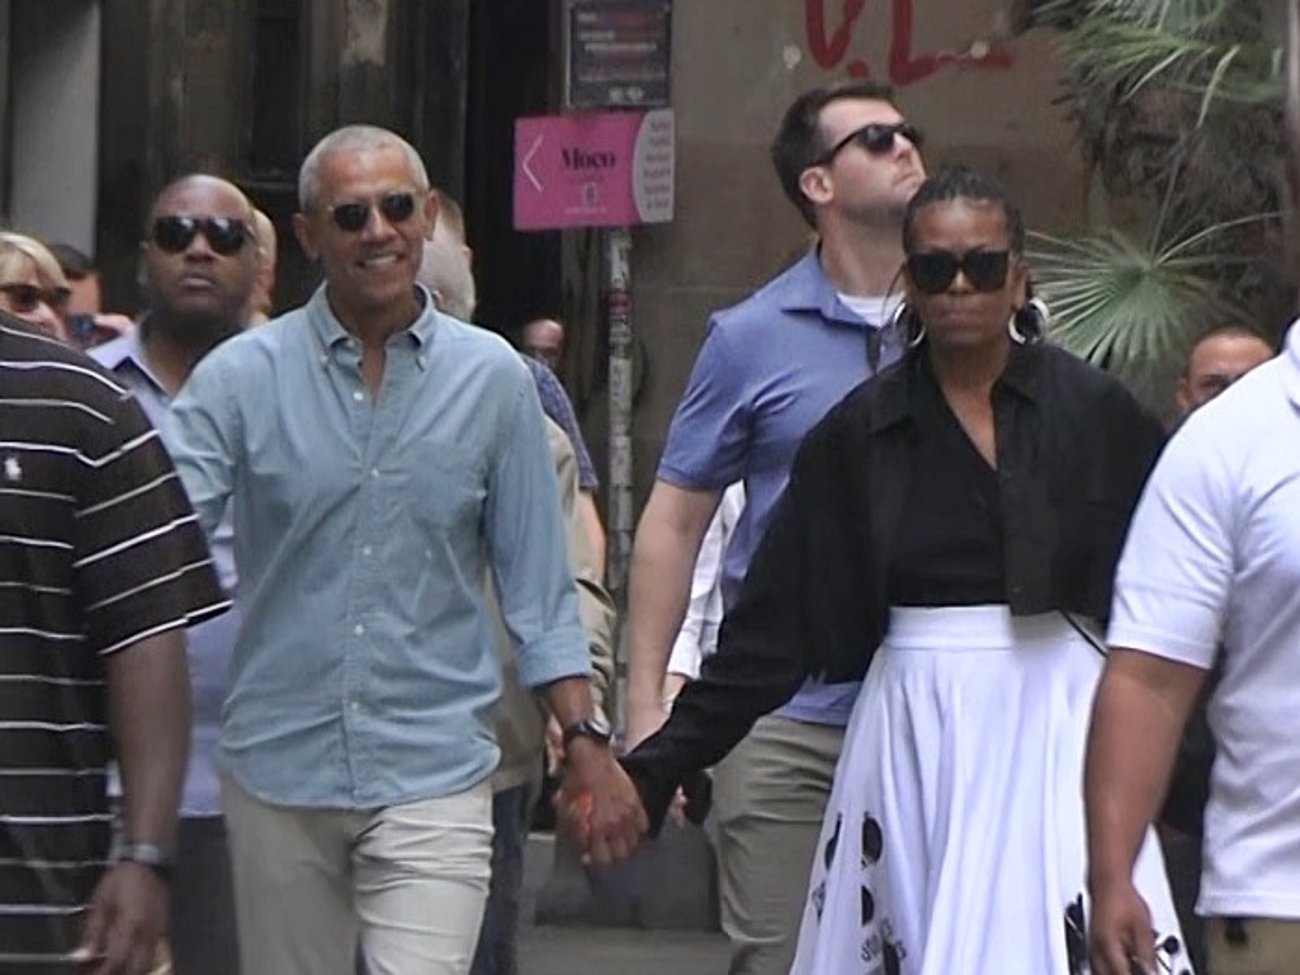 Barack und Michelle Obama zeigen ihre Liebe auf den Straßen von Barcelona